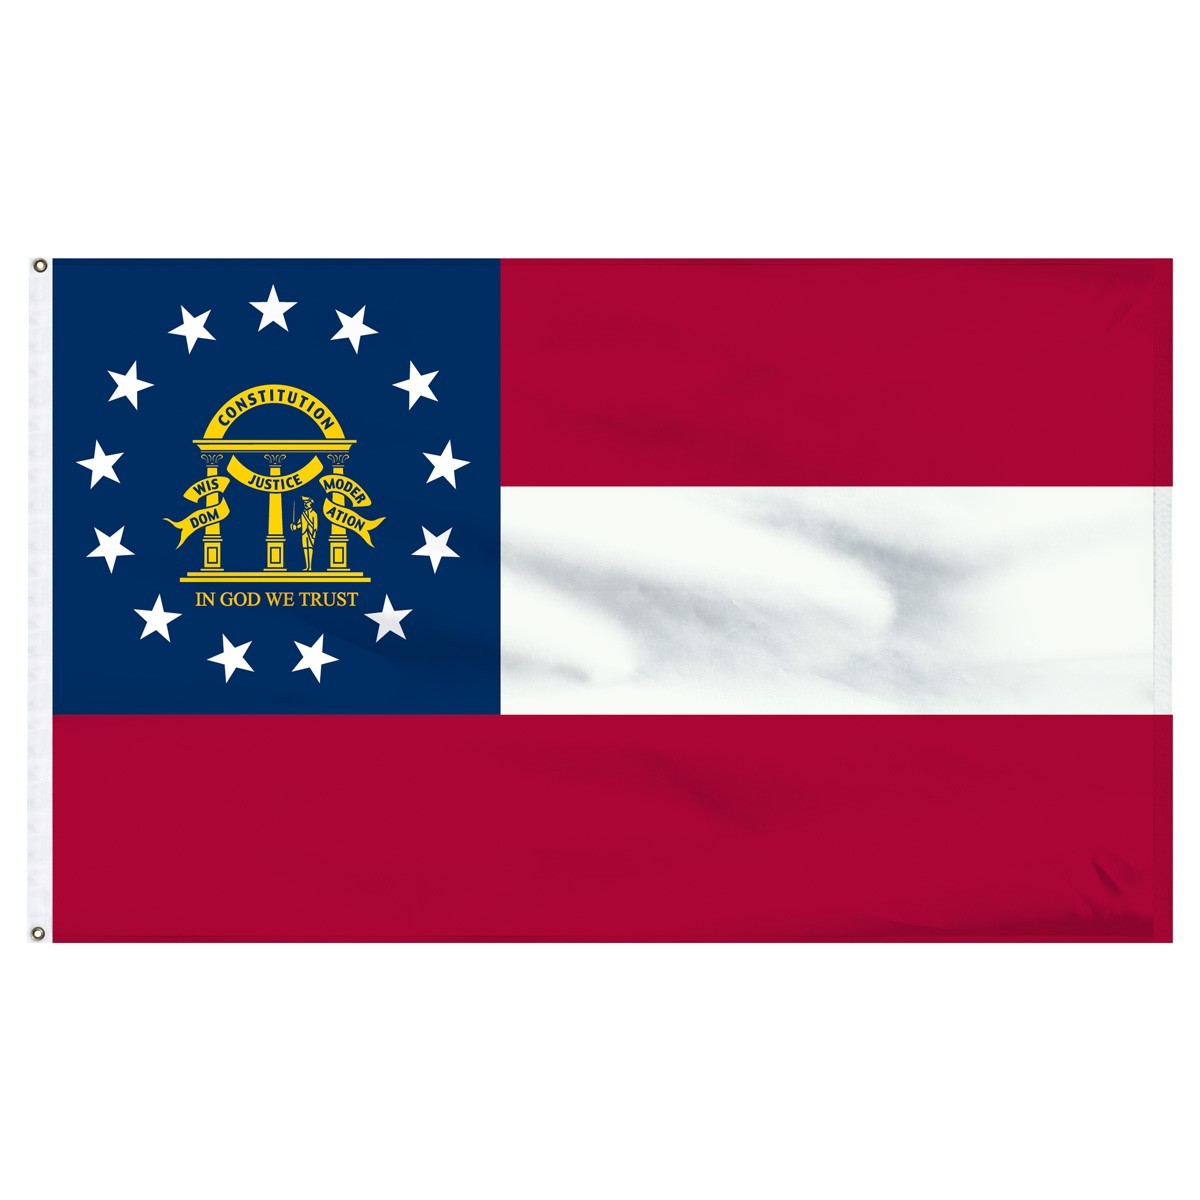 Georgia  2' x 3' Outdoor Nylon Flag